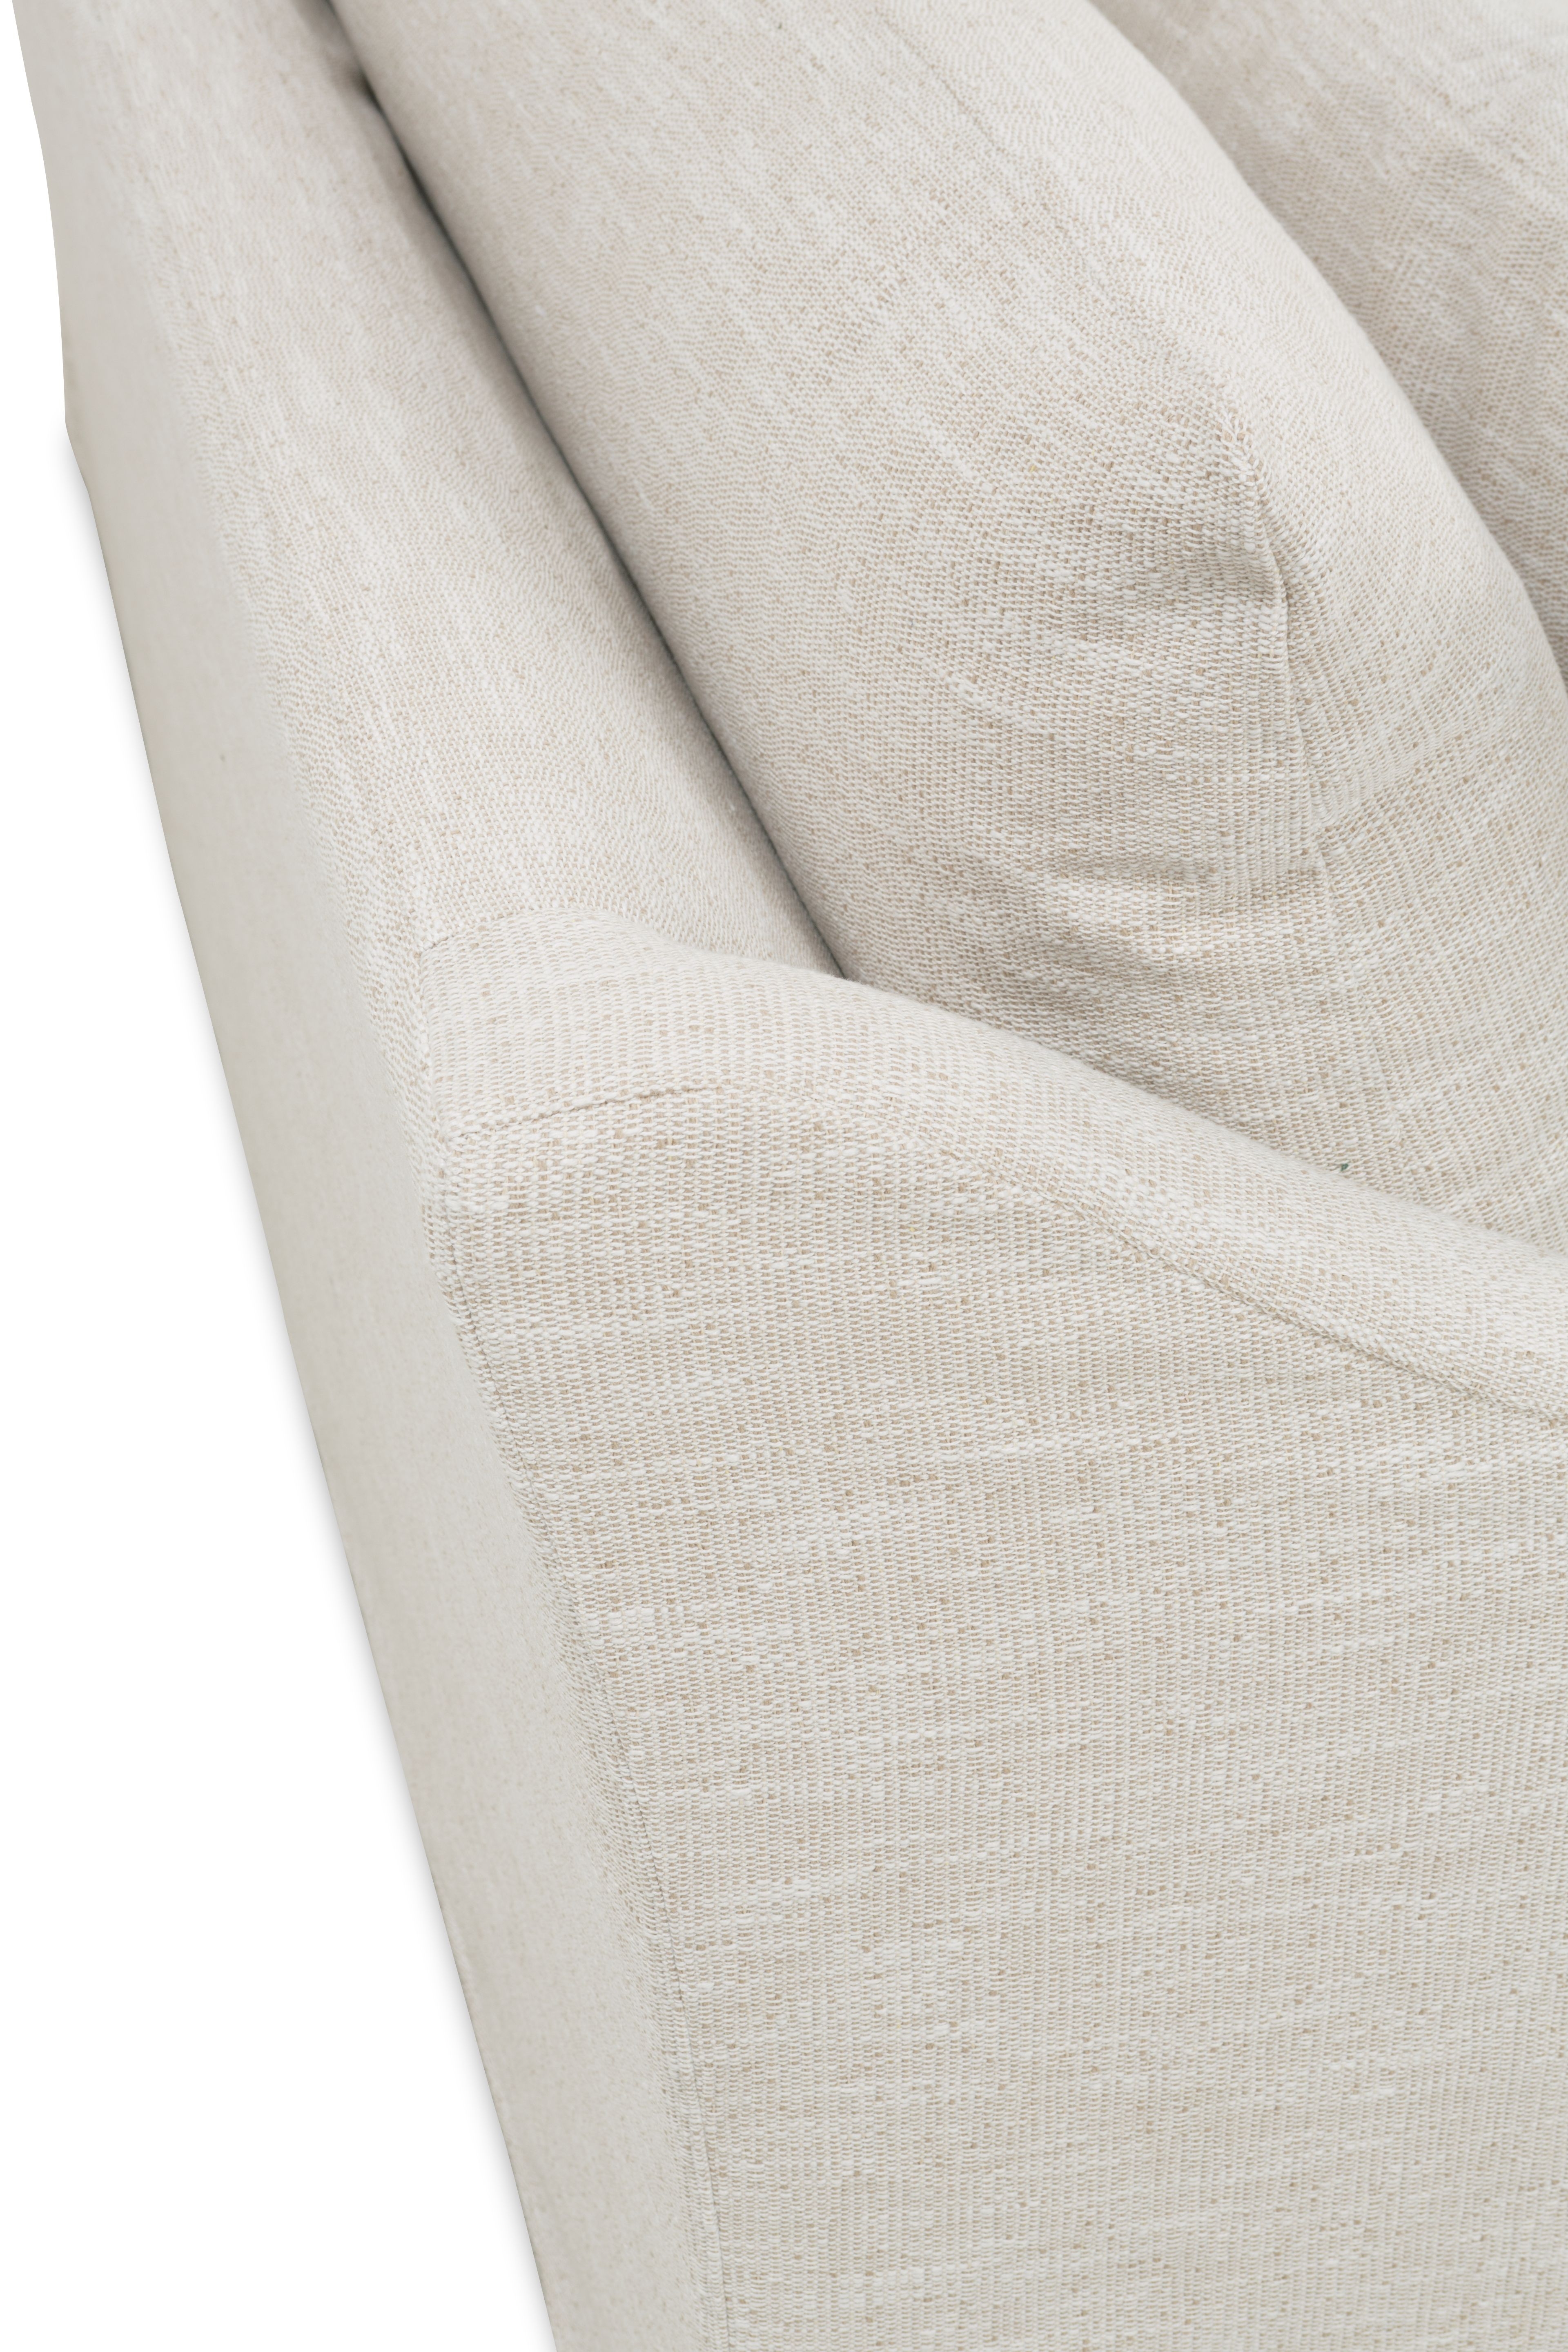 Fraser Slipcover Sofa, Bench Cushion, White, 95" - Image 7